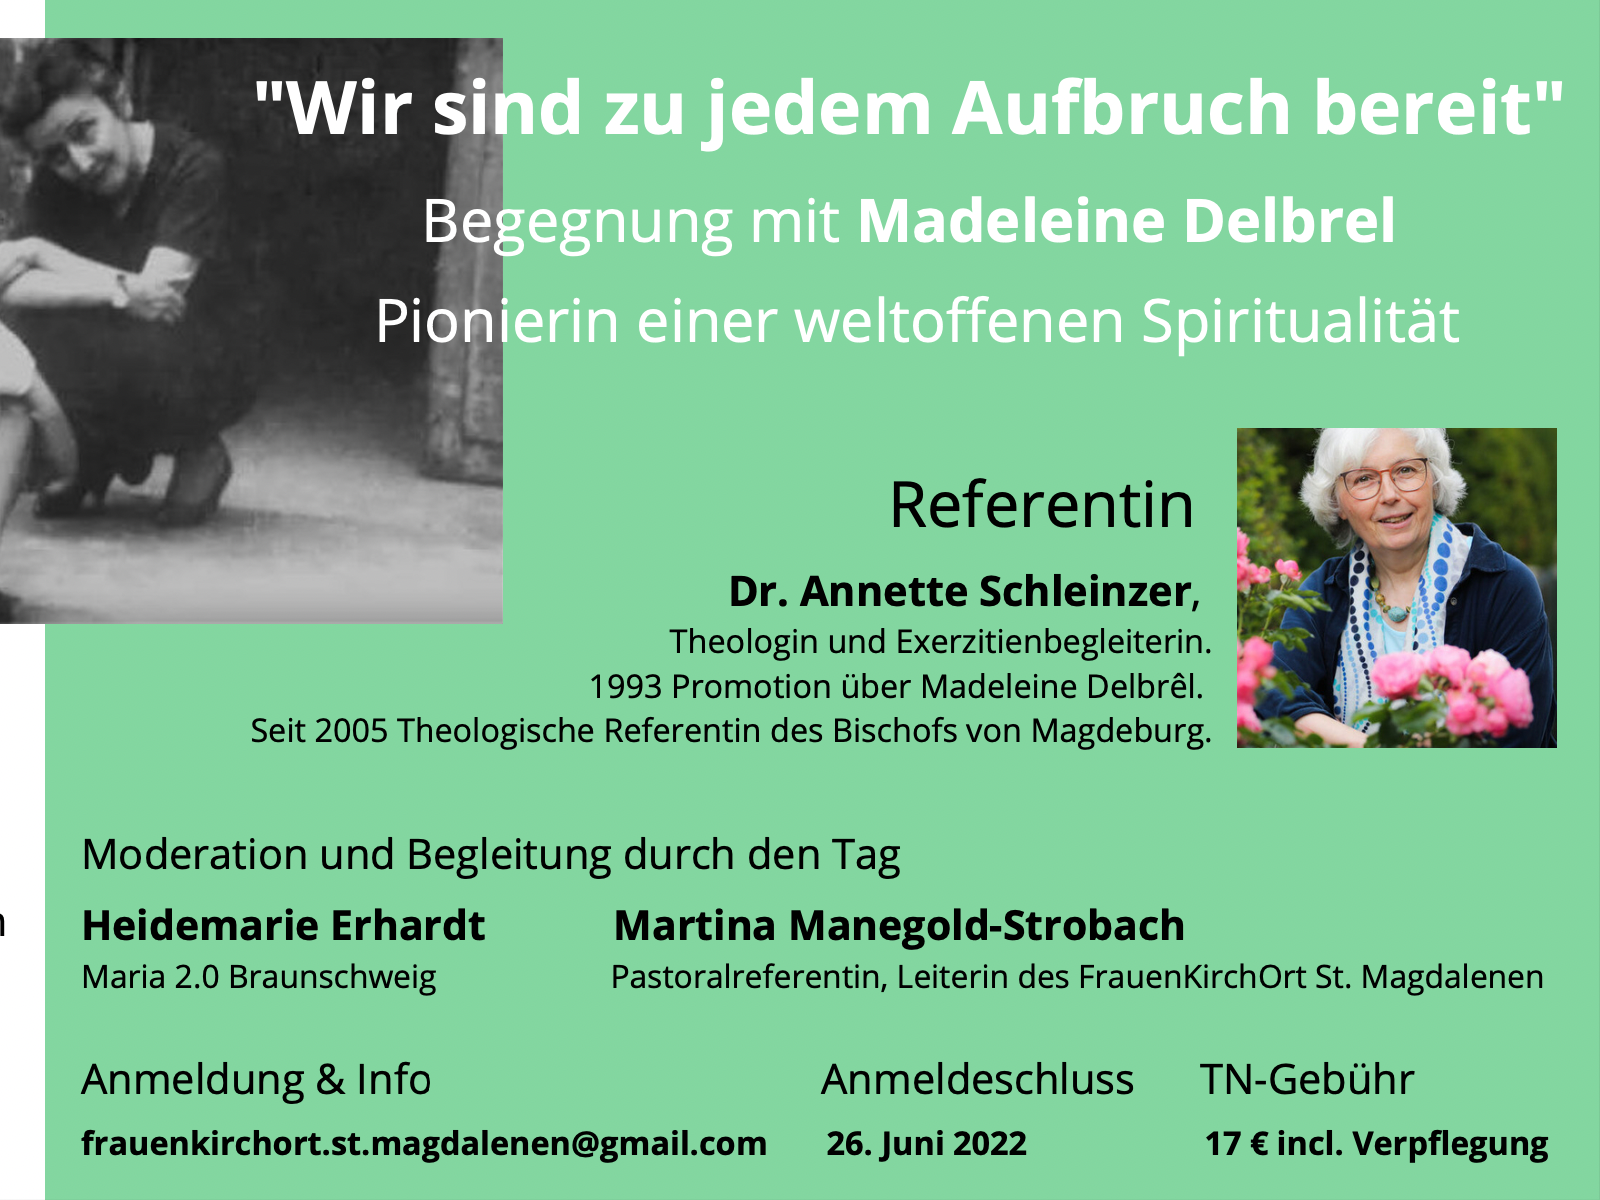 Wir sind zu jedem Aufbruch bereit - Begegnung mit Madeleine Debrel 2. Juli 2022 in Hildesheim